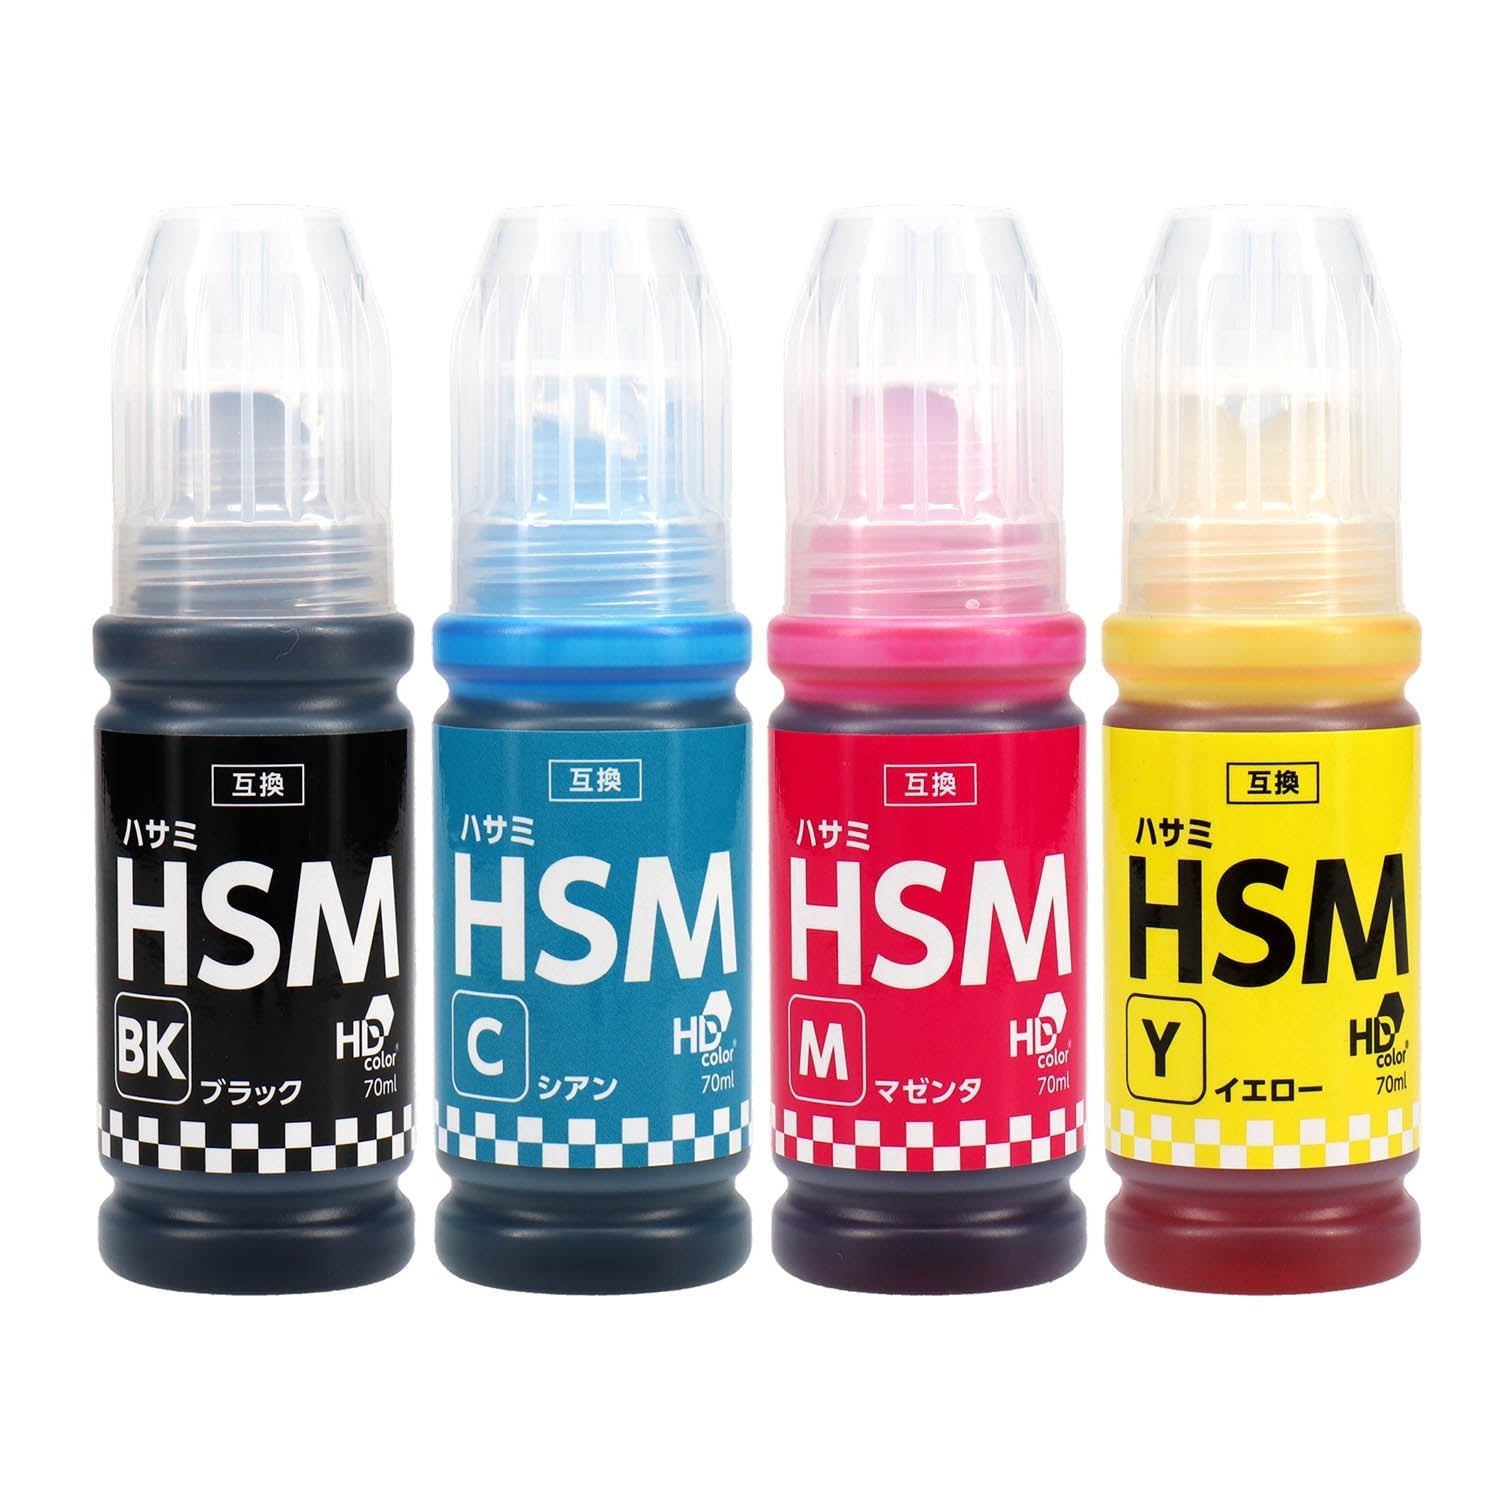 エプソン用 HSM (ハサミ) 互換インクボトル 4色セット